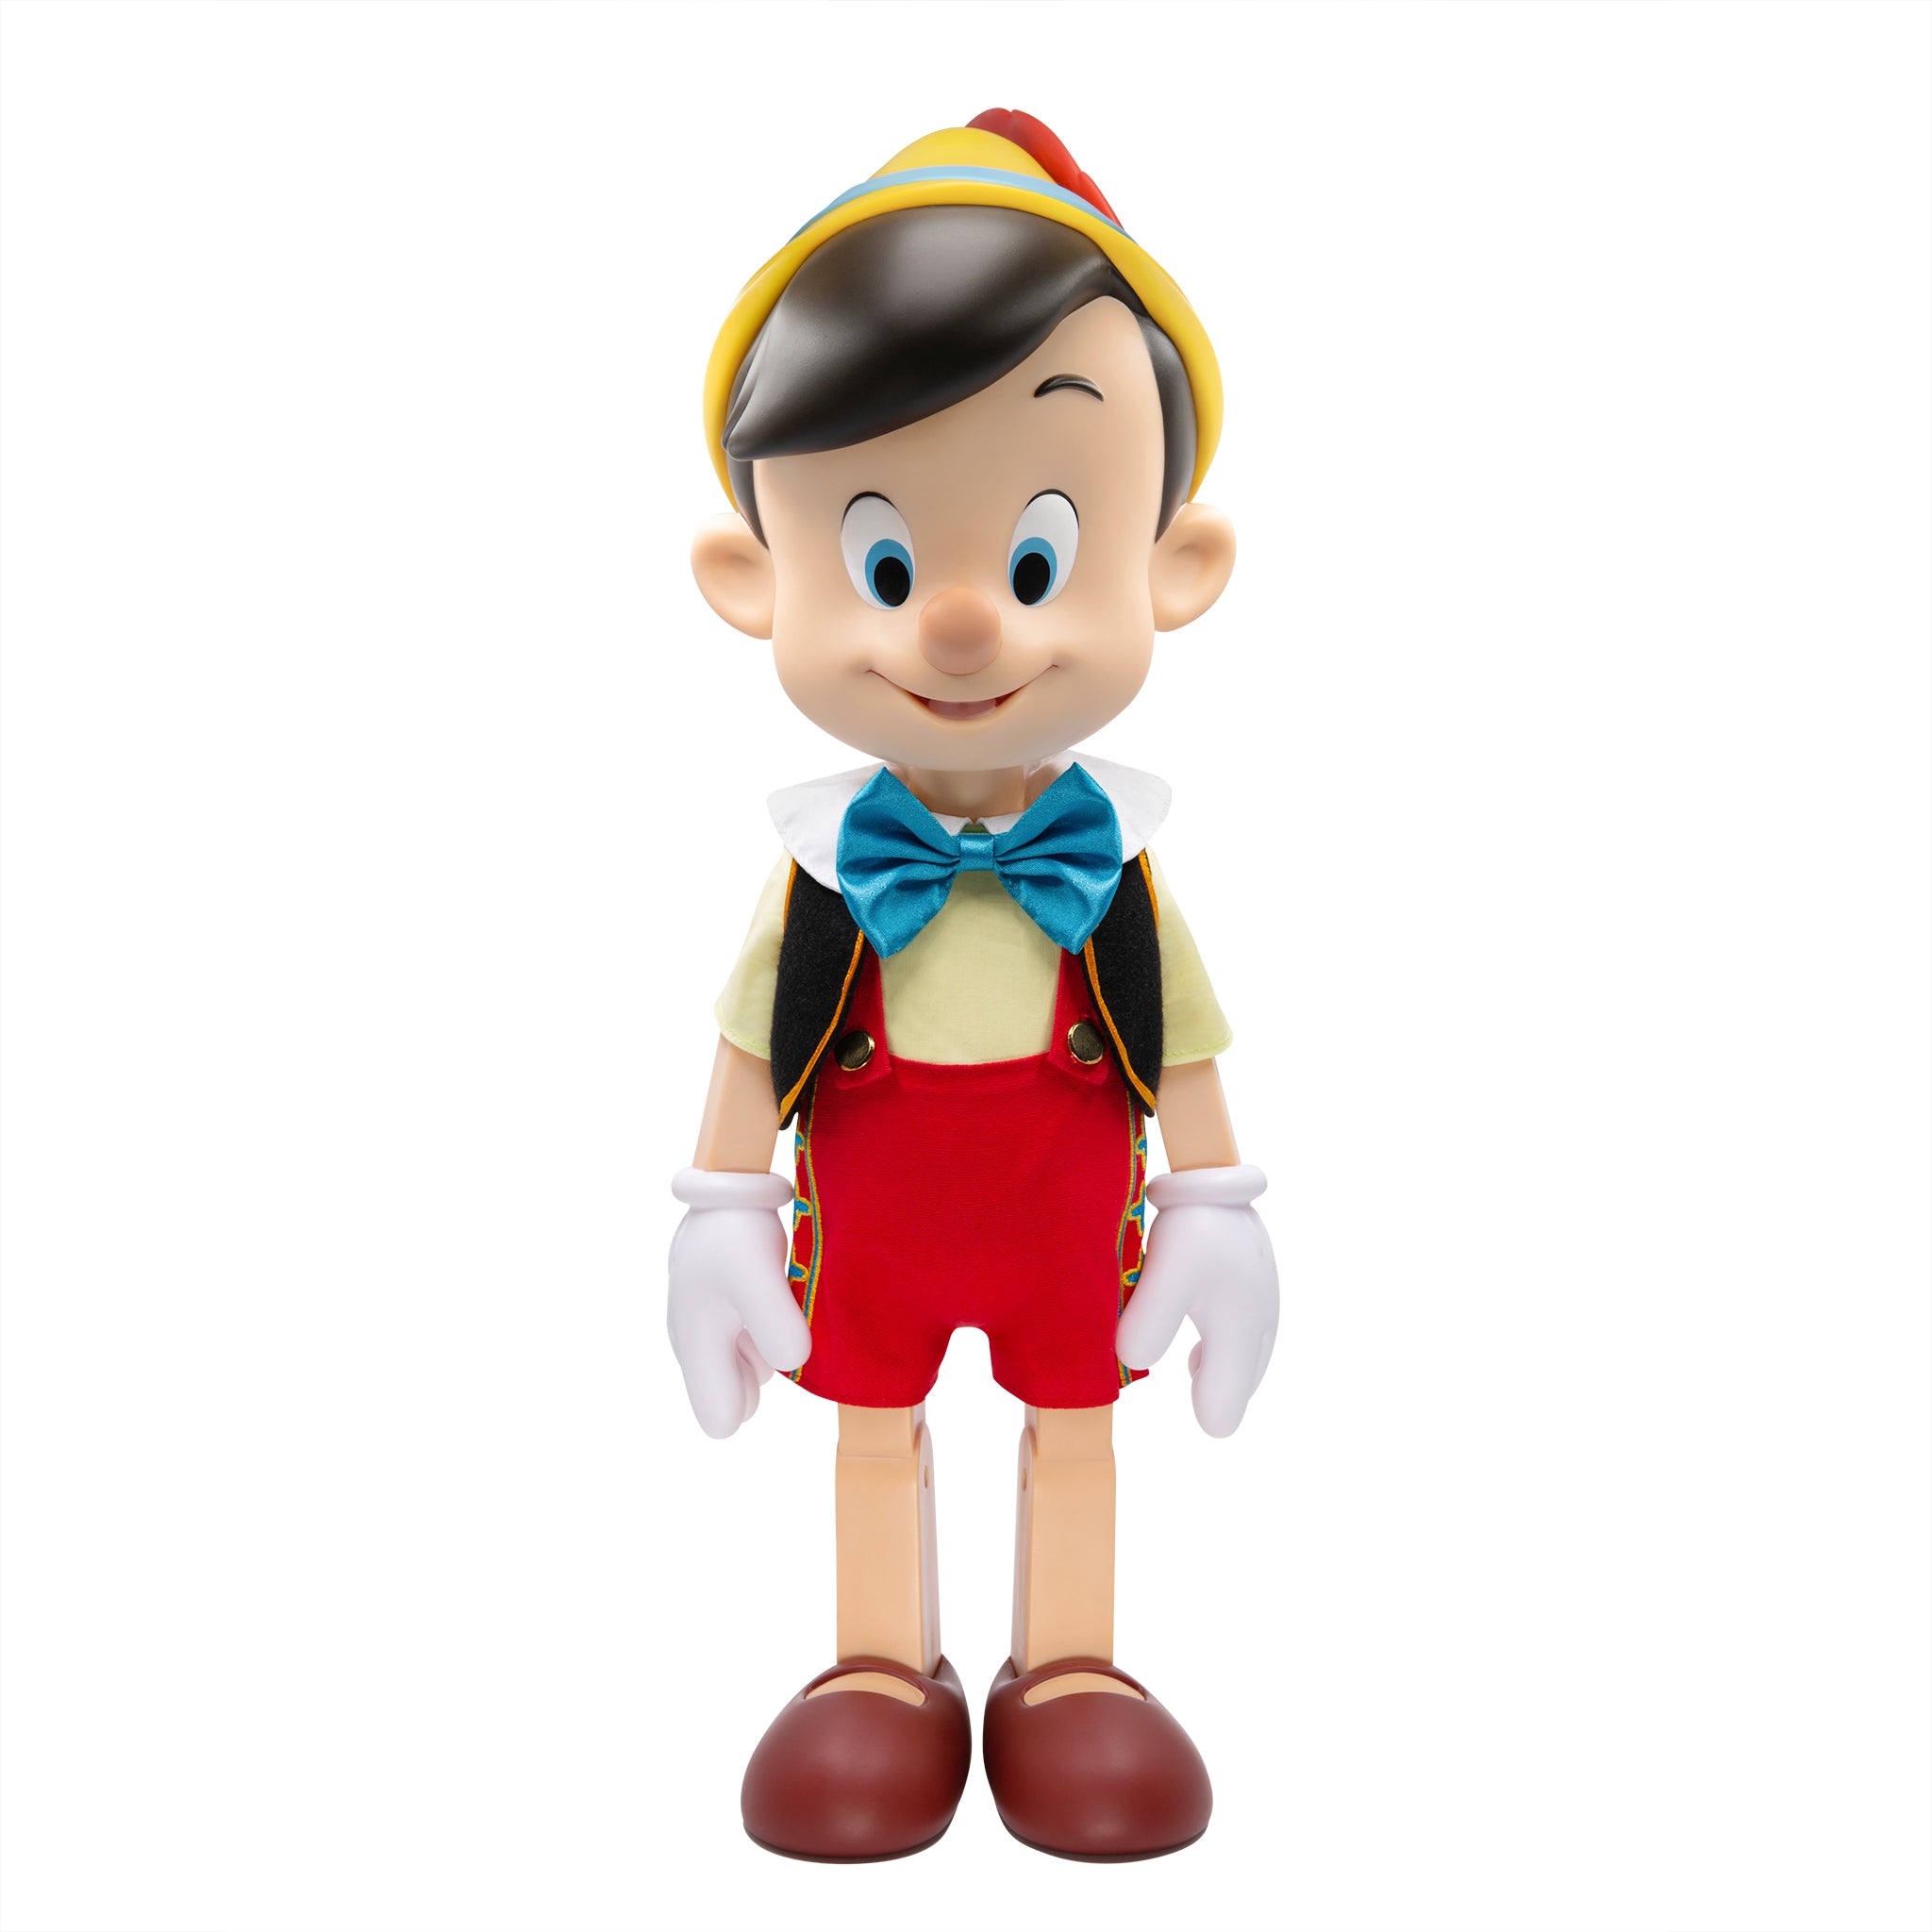 Disney Supersize - Pinocchio [Original]